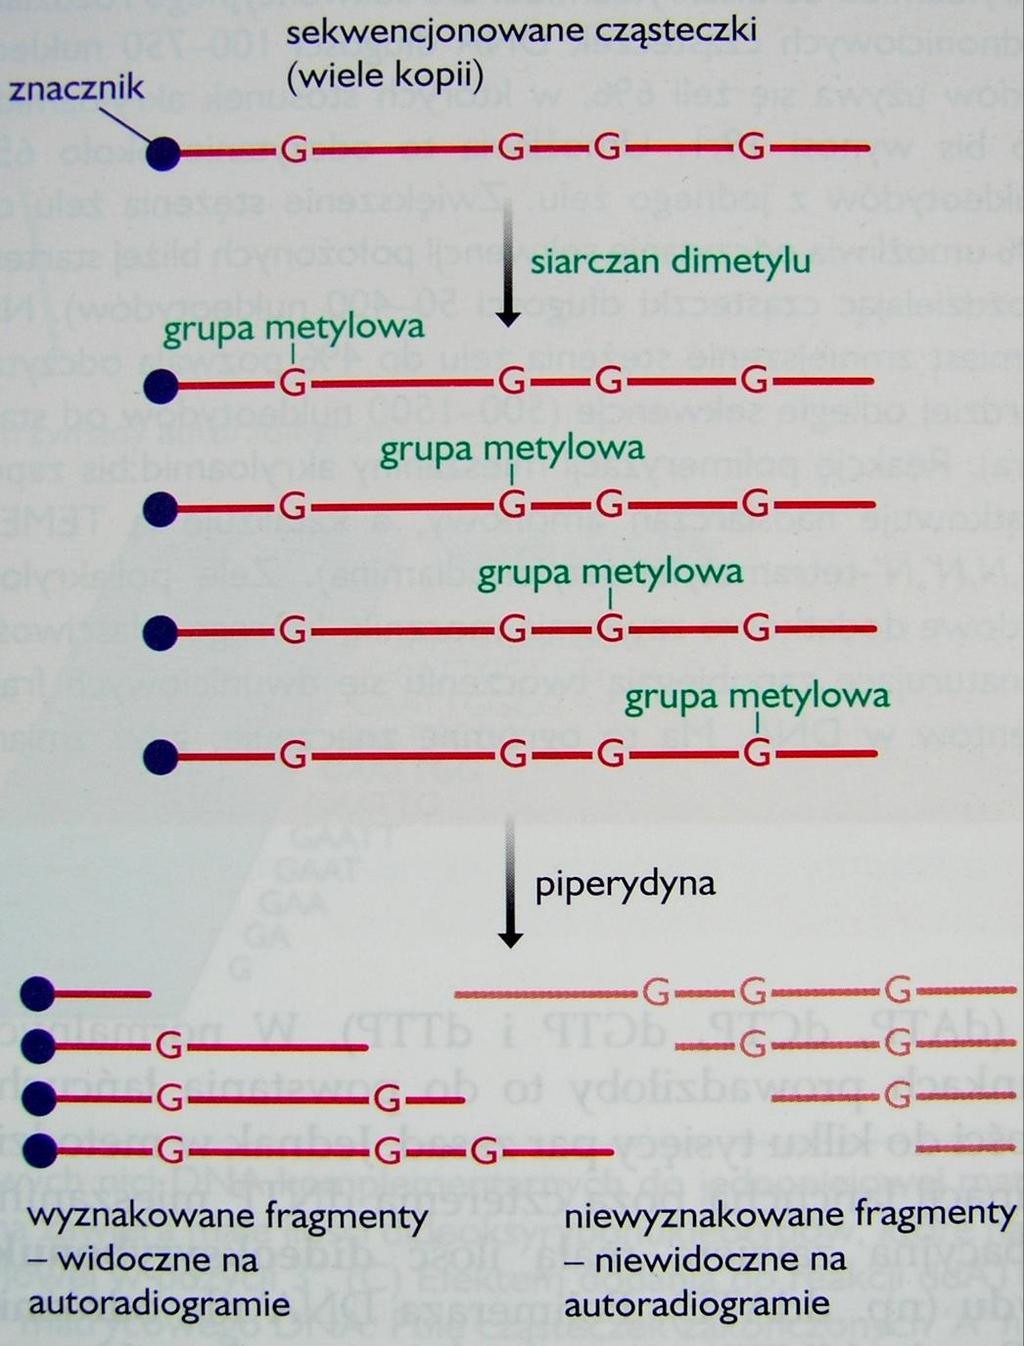 1. Metoda chemicznej degradacji DNA w metodzie cząsteczki DNA zakończone określonym nukleotydem otrzymuje się przez działanie odczynnikami specyficznie tnącymi nić DNA w miejscu określonego